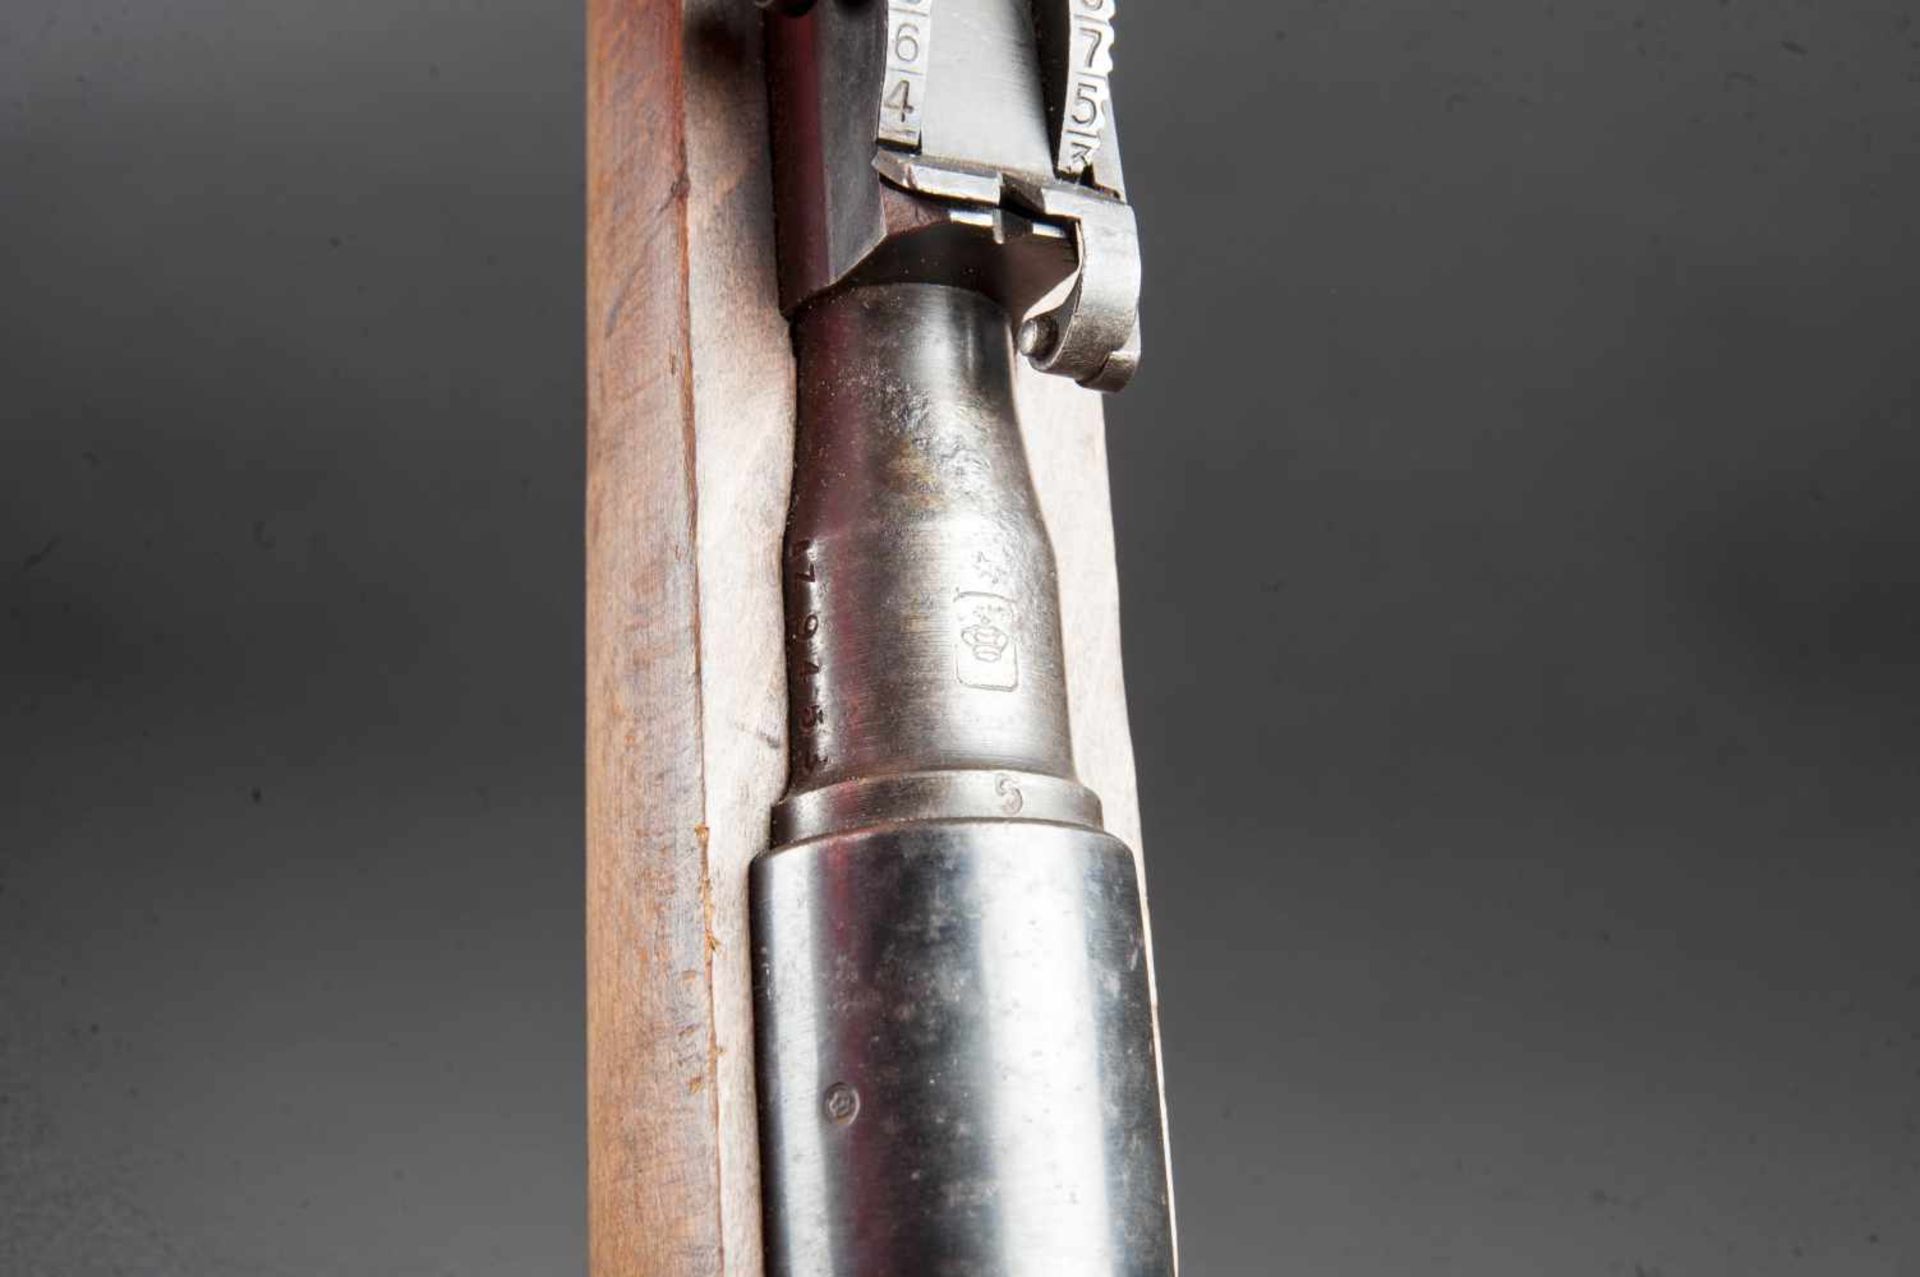 Fusil carcano neutralisé Crosse en bois, avec tampon marqué FAT 1946. Numéro AZ 9453. Baguette de - Bild 4 aus 4